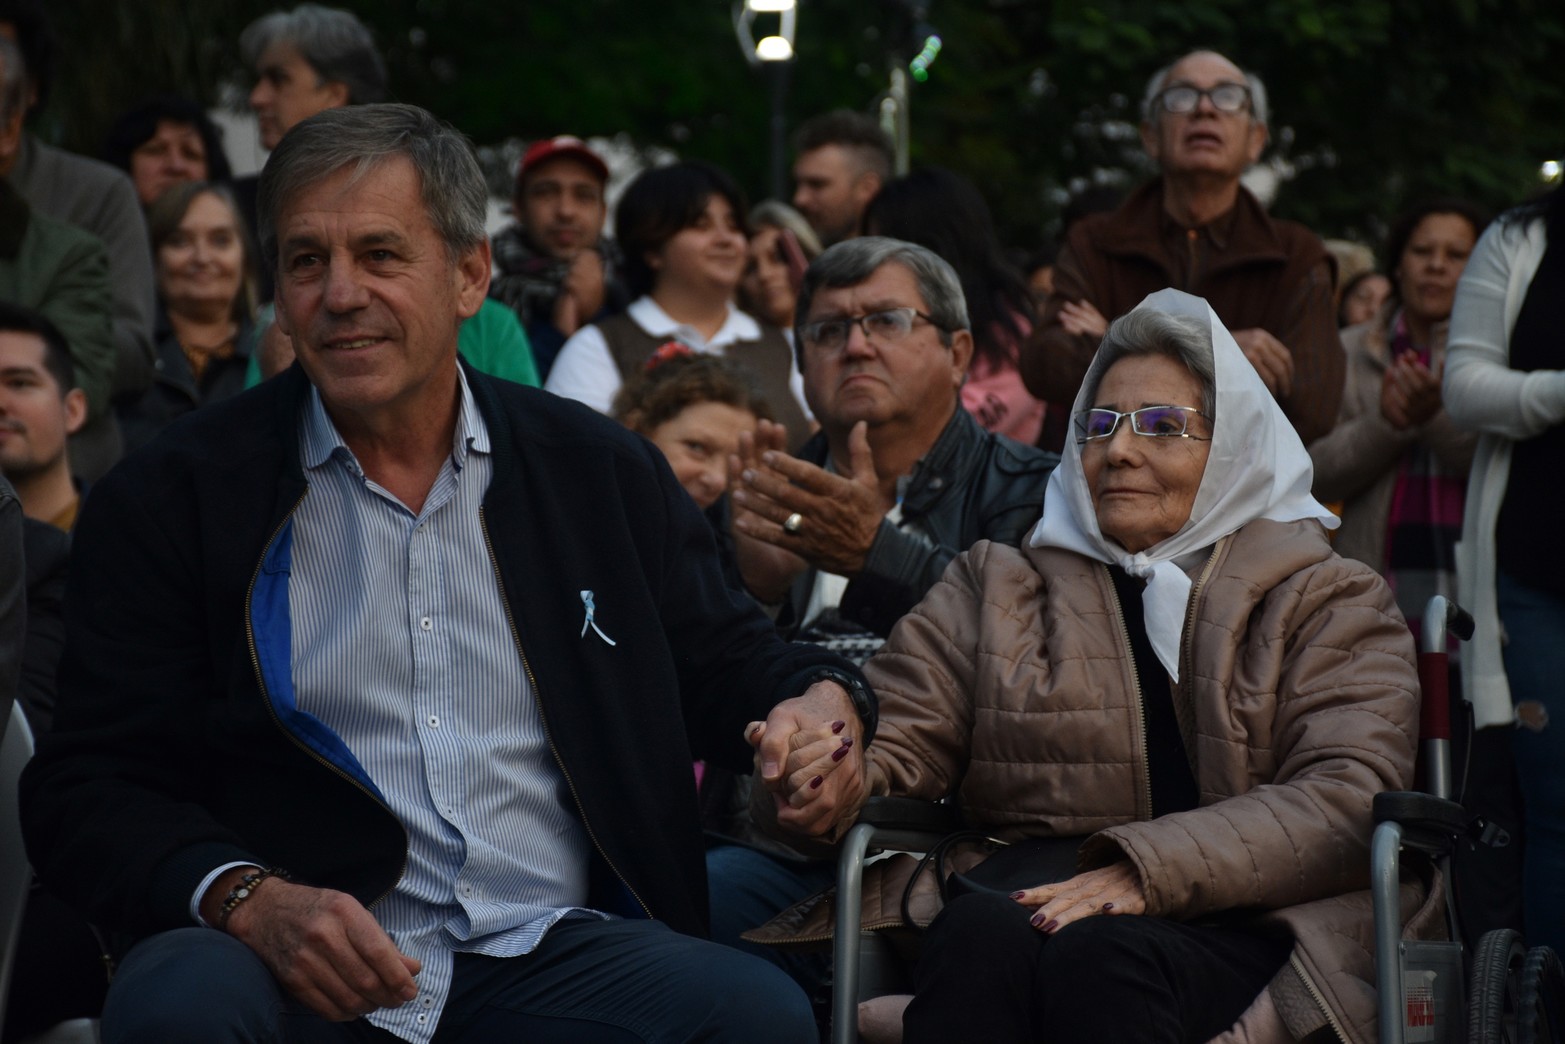 Acto de inauguración de la remozada Plaza del Soldado Argentino.
Foto: Manuel Fabatía